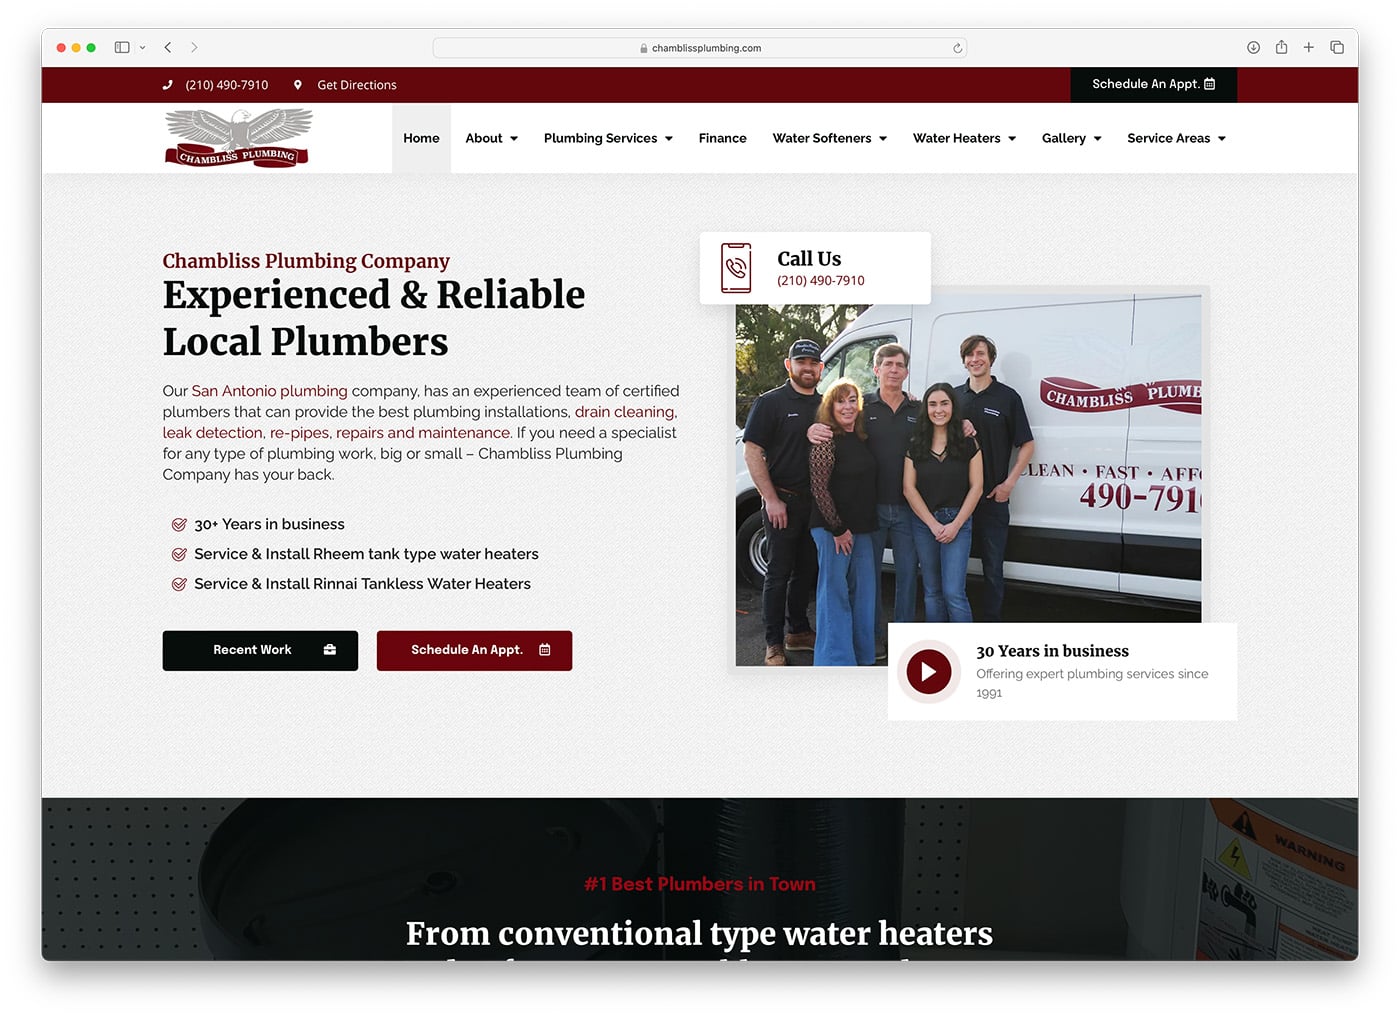 Chambliss Plumbing Company website